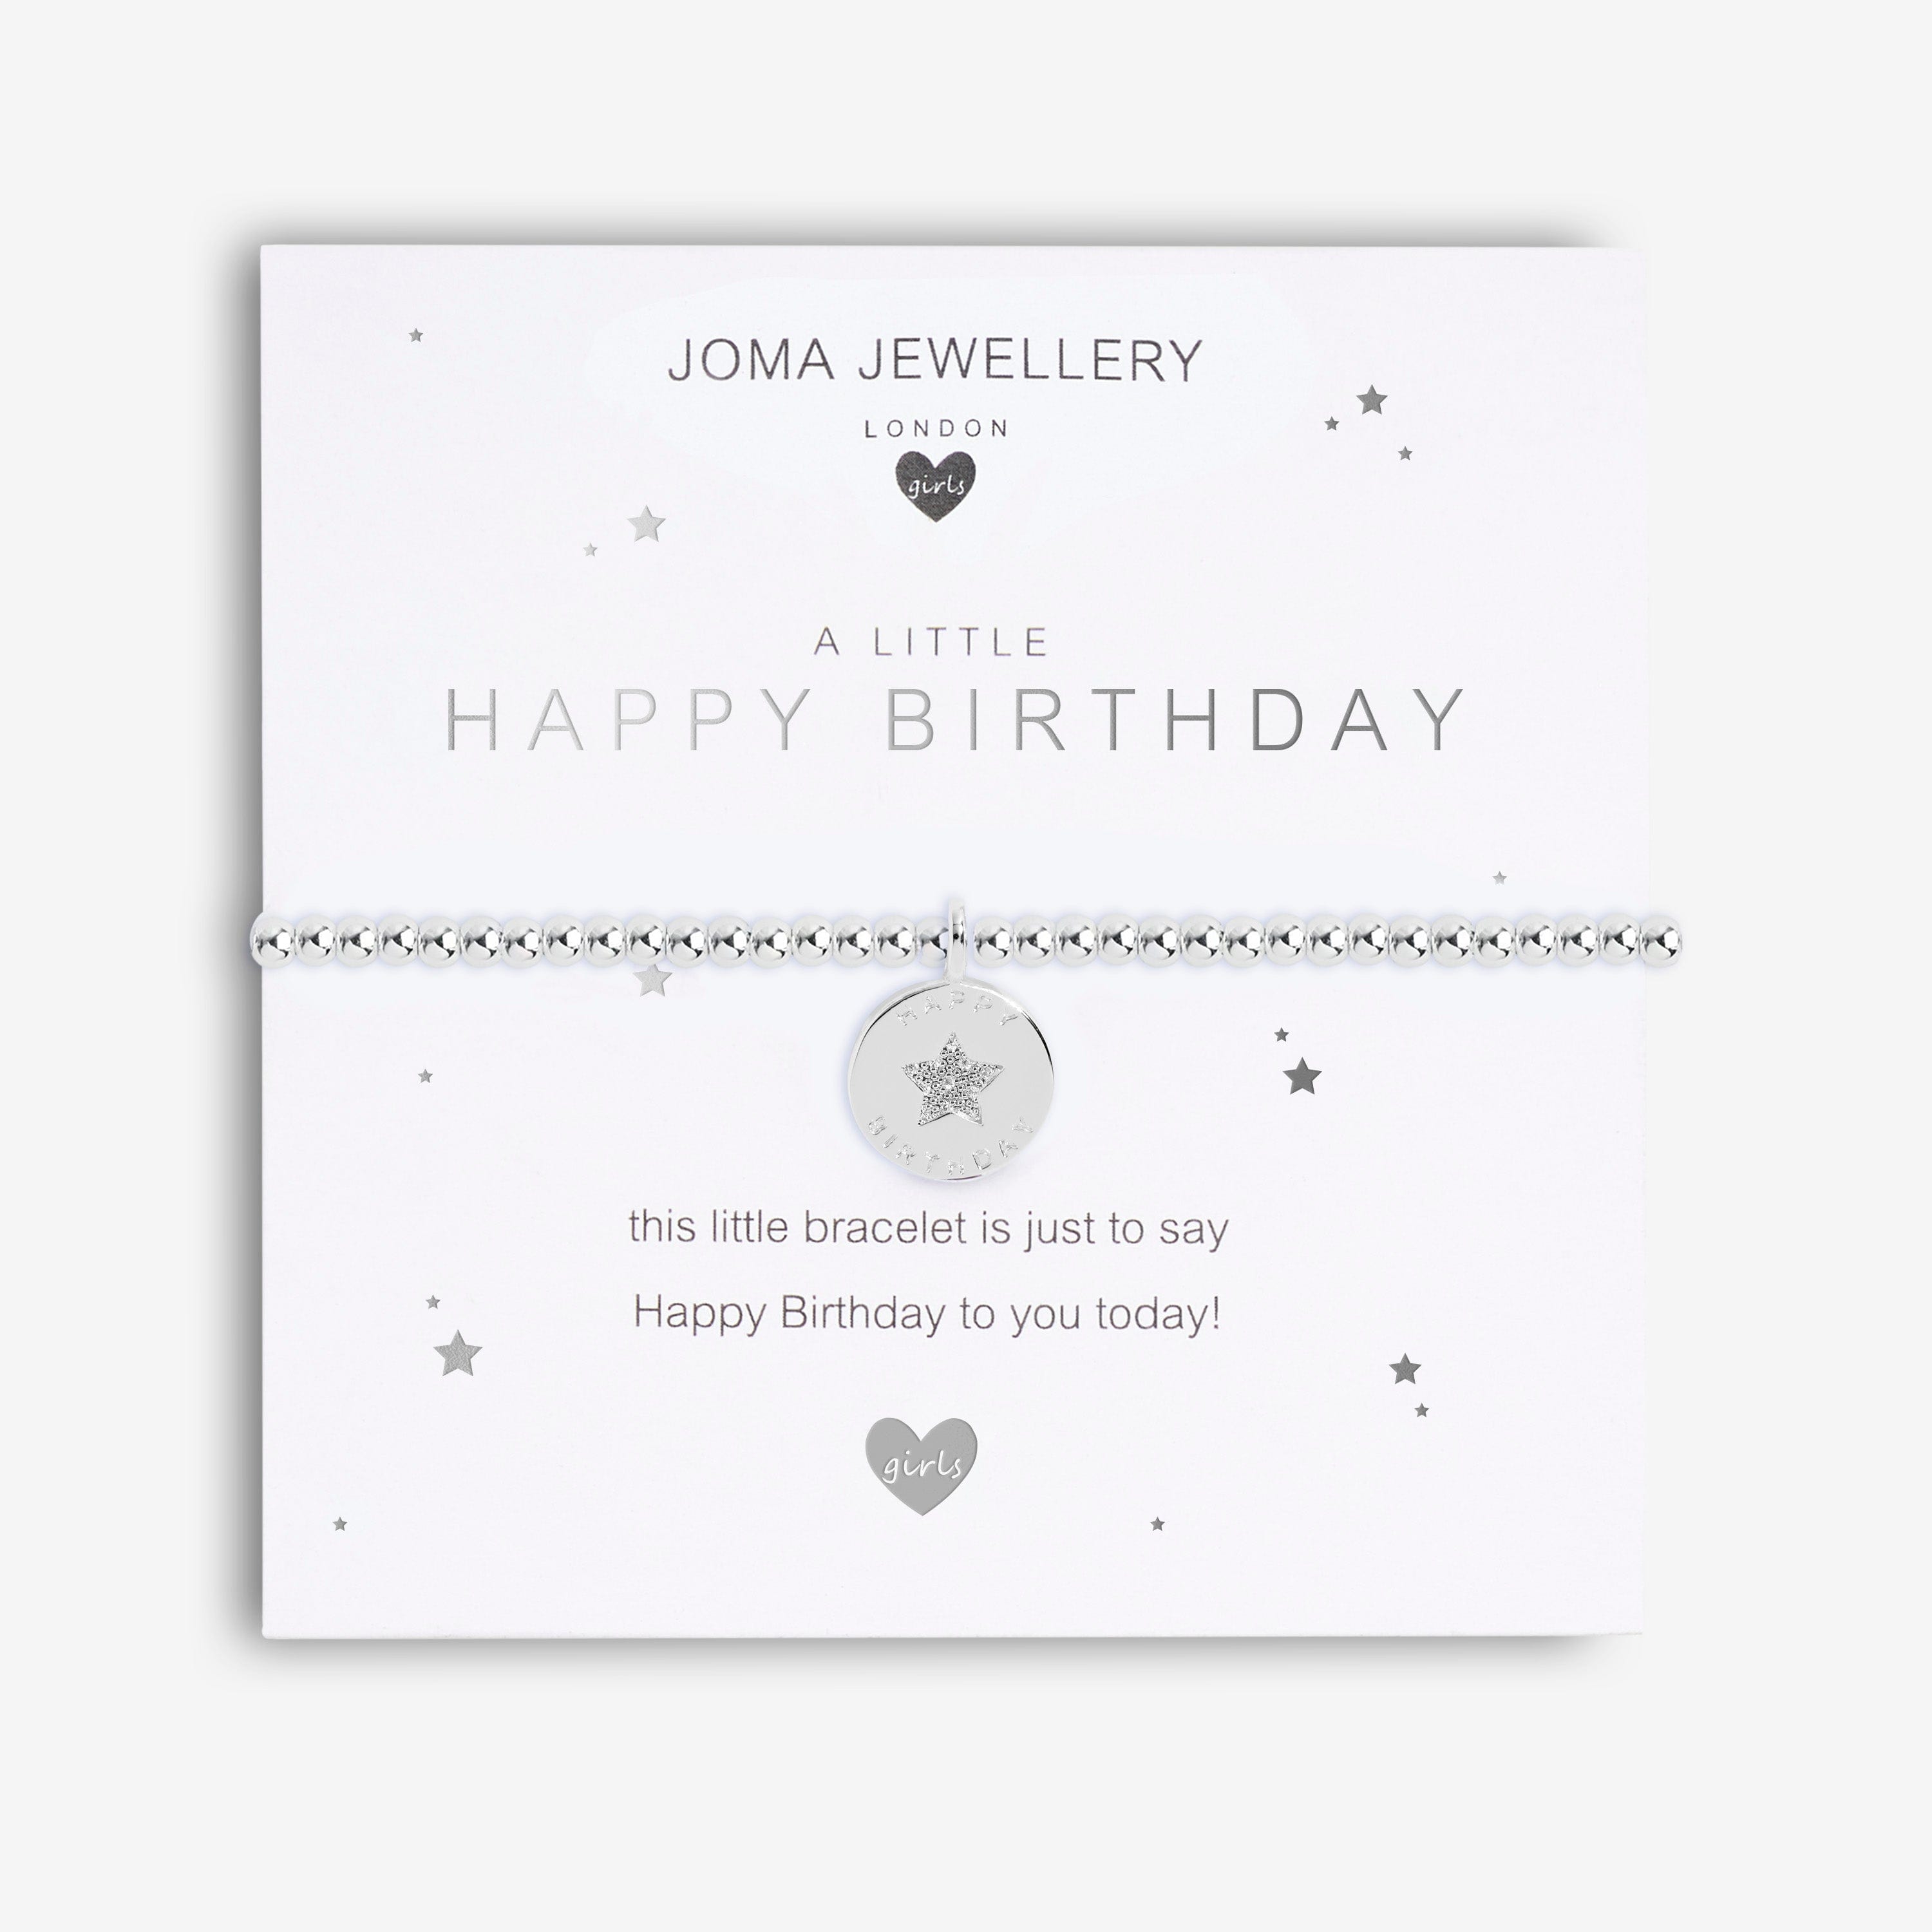 Joma Jewellery Childrens Bracelet Joma Jewellery Childrens Bracelet - A Little Happy Birthday